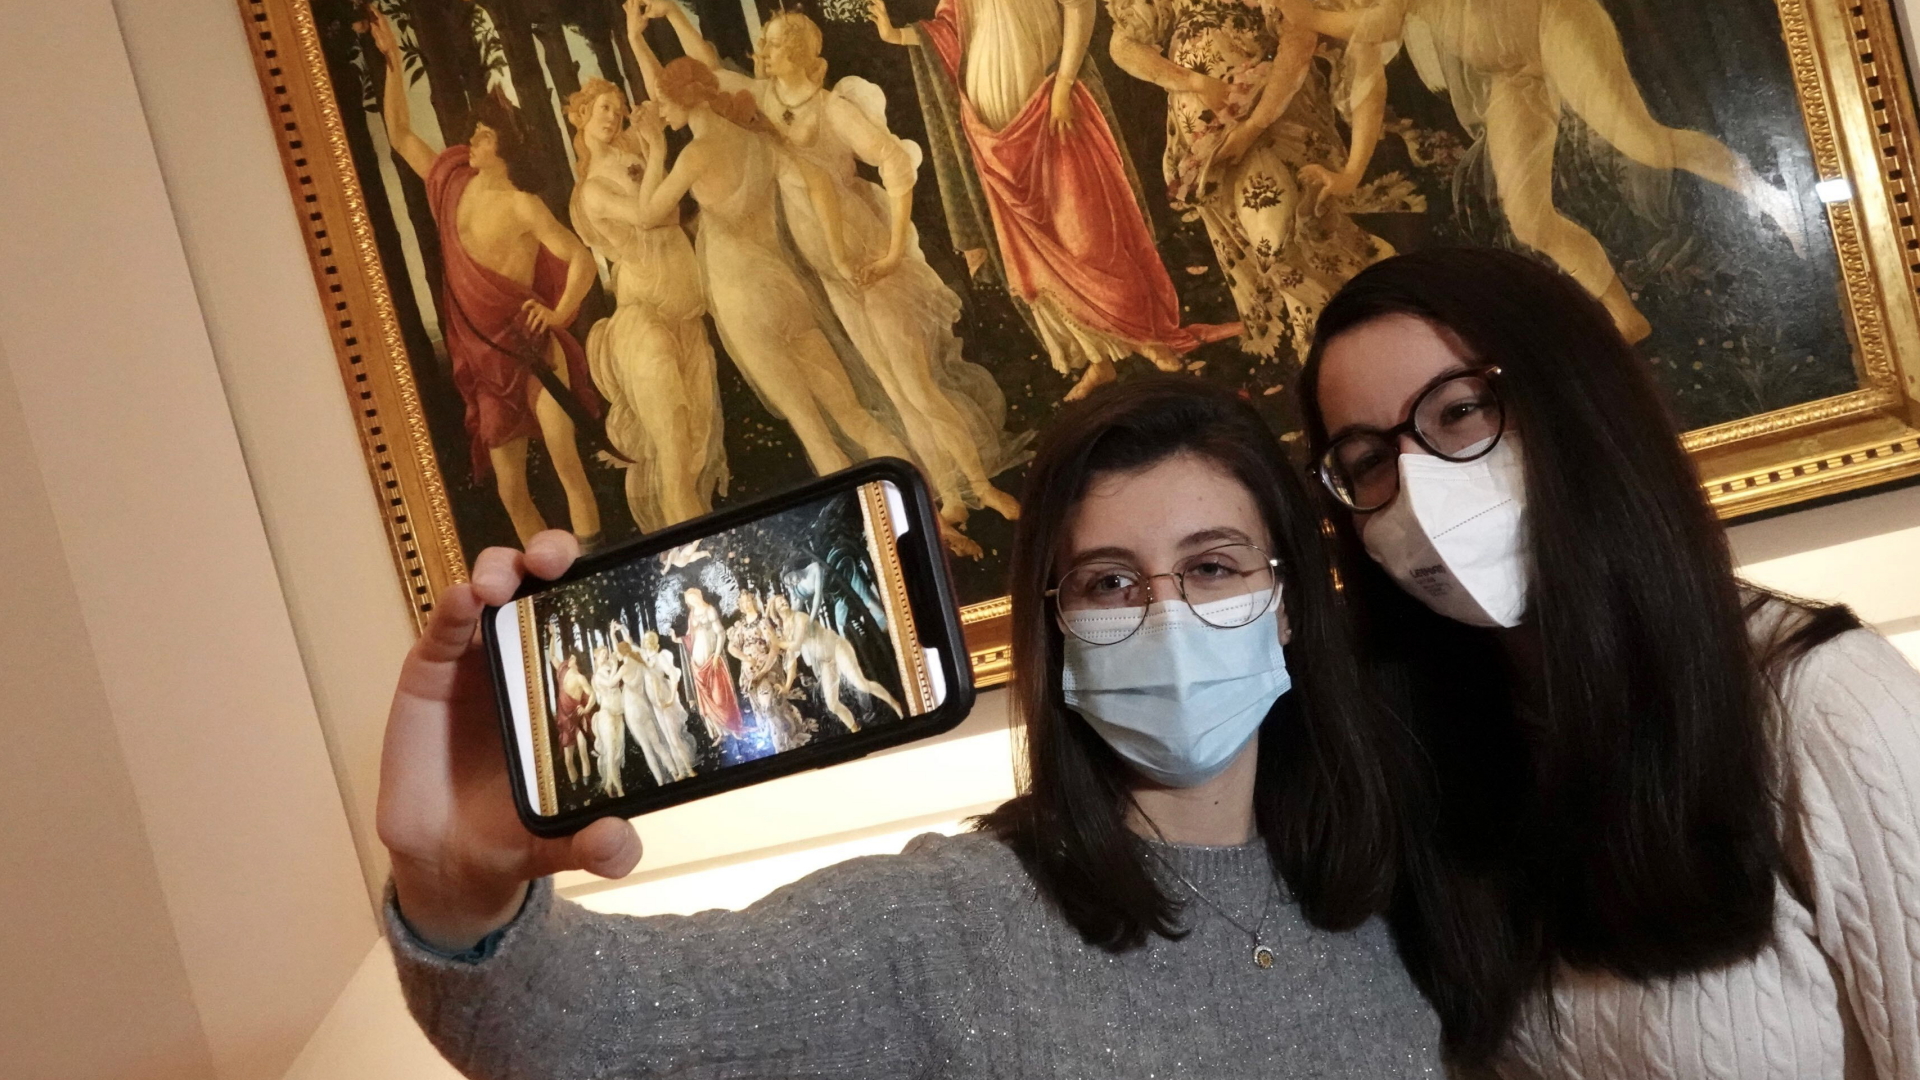 Zwei Besucherinnen mit Mund-Nasen-Schutz machen ein Selfie vor dem Kunstwerk "Primavera" (etwa um 1480) des Malers Sandro Botticelli.  | dpa